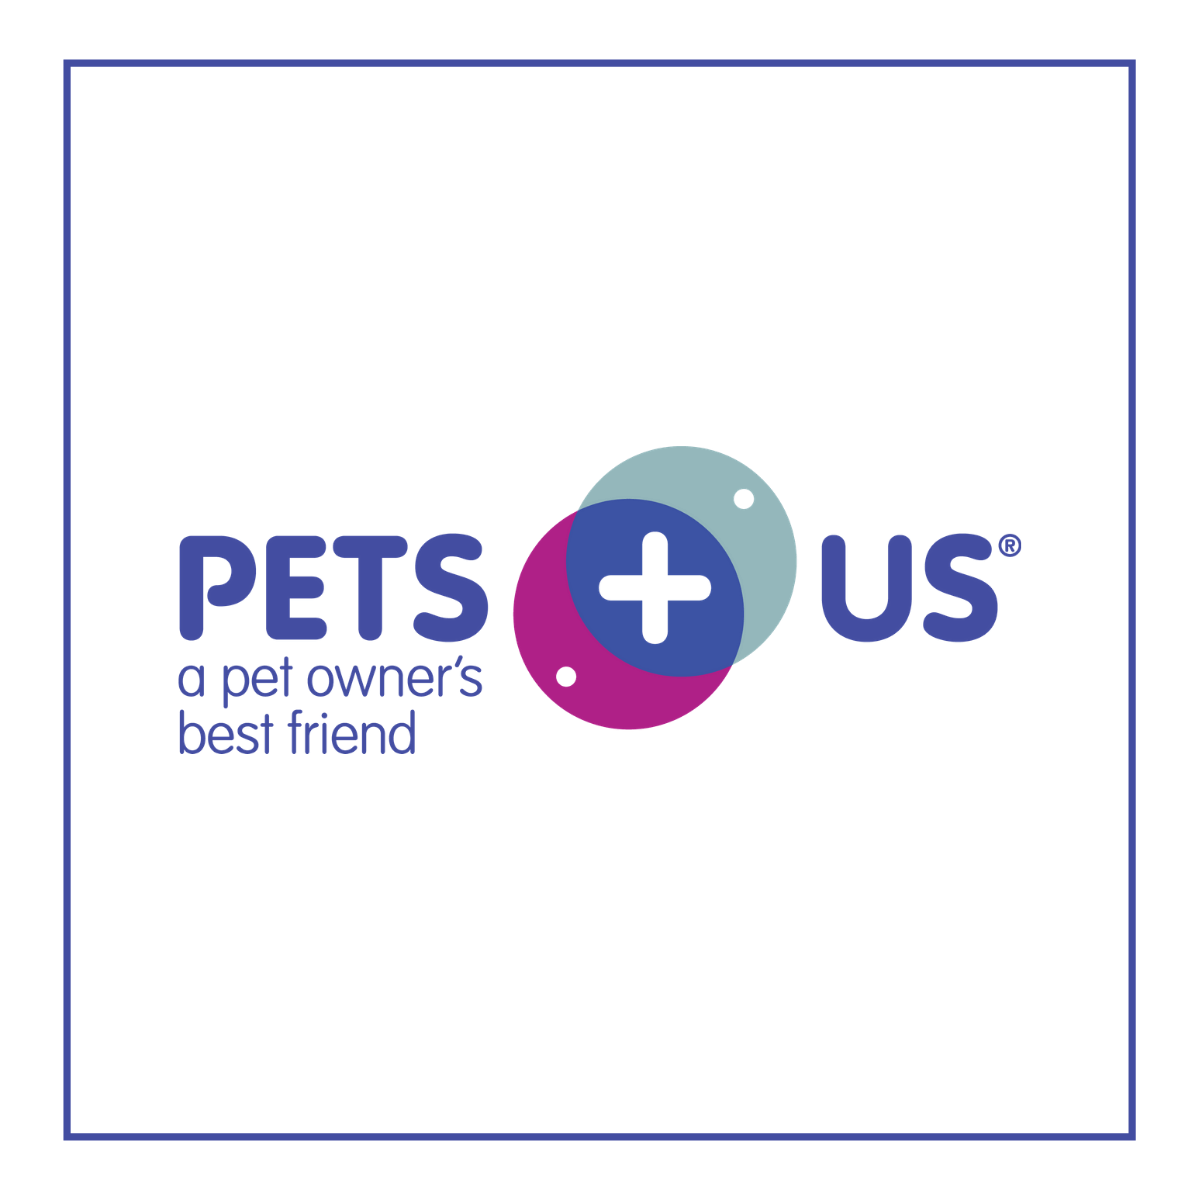 Pets Plus Us